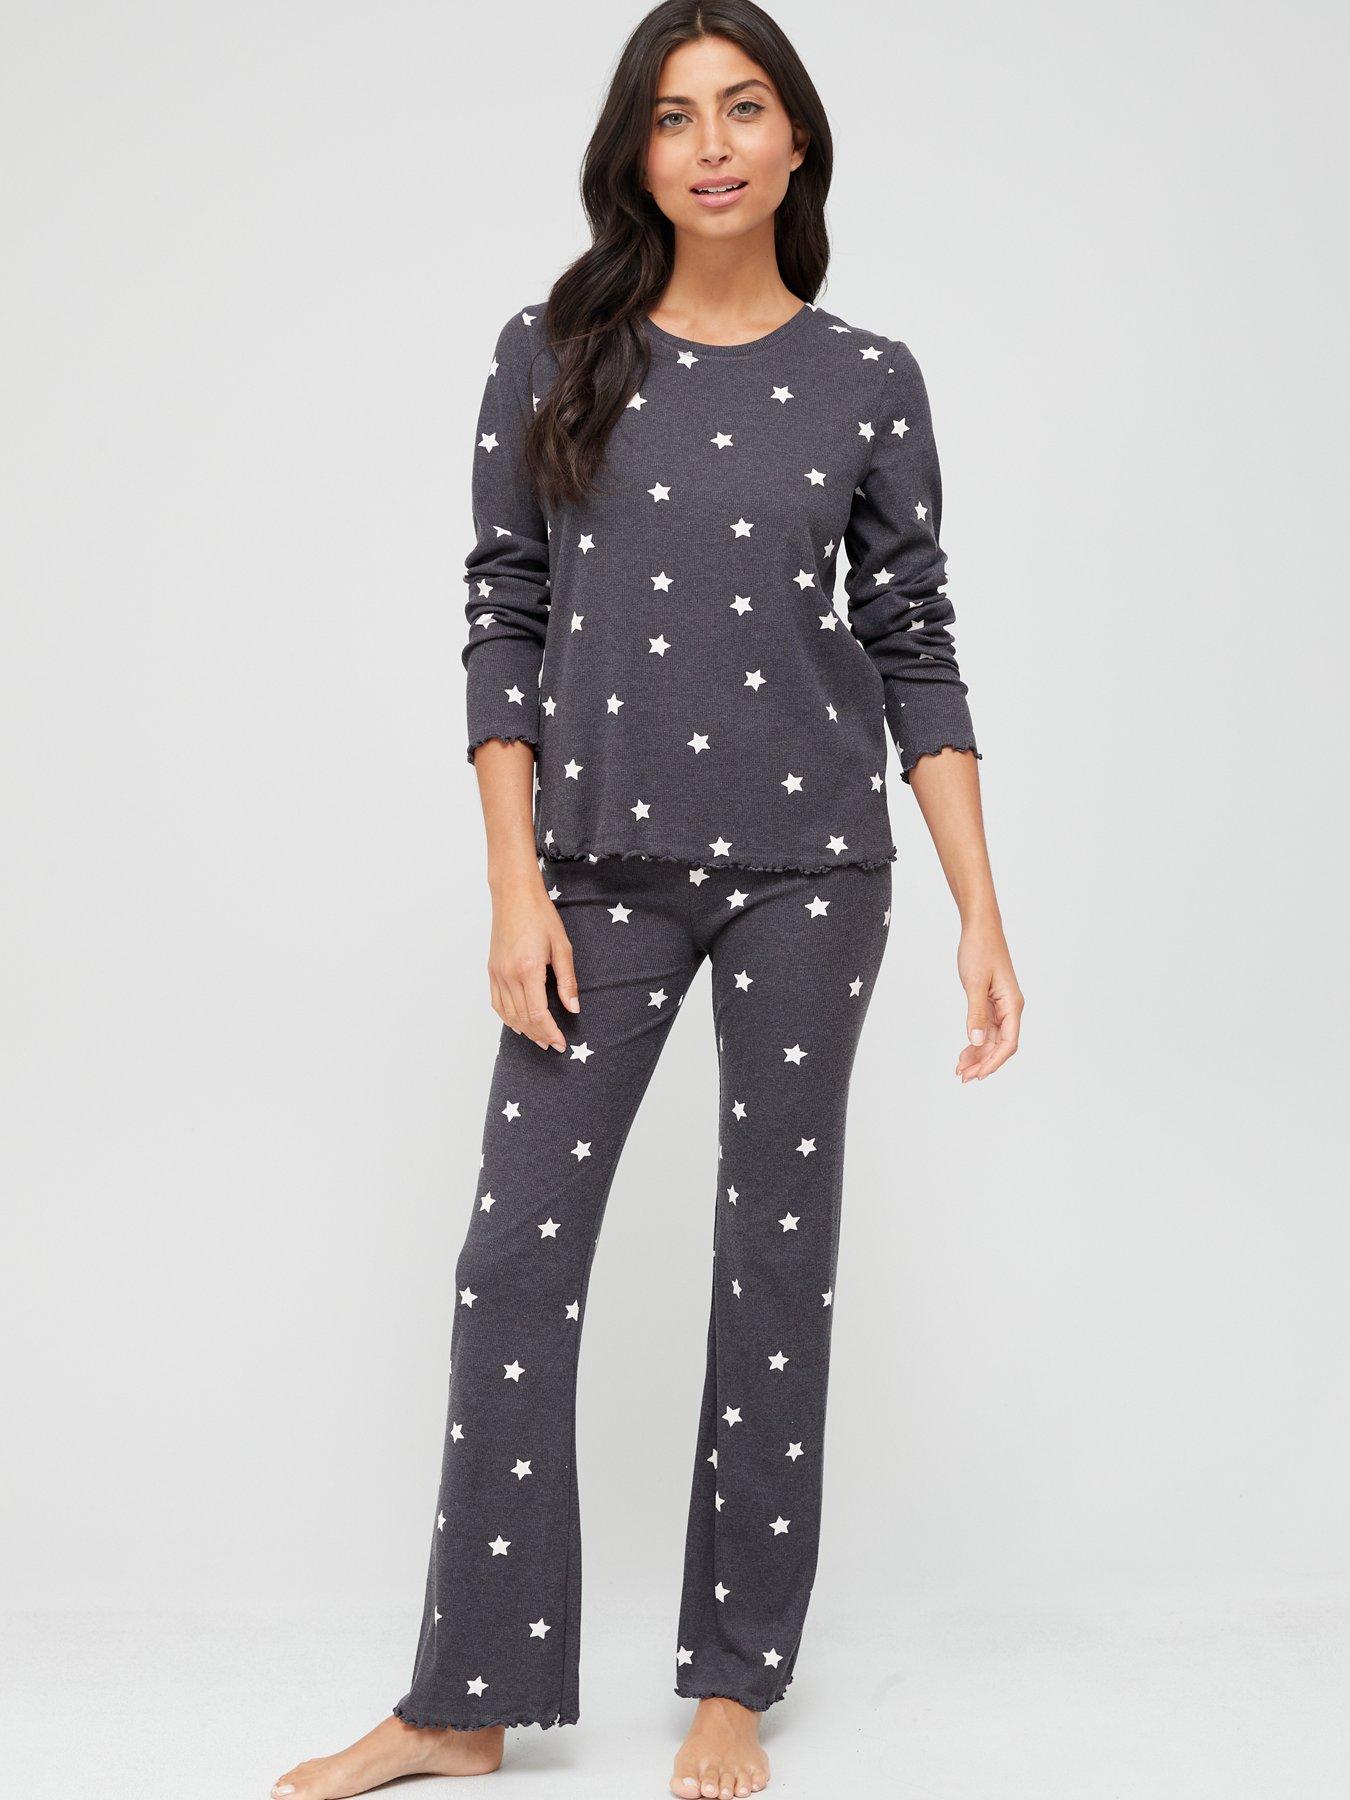 Grey Lindex Exclusive Cotton Blend Printed Pyjama Top in Grey Womens Clothing Nightwear and sleepwear Pyjamas 